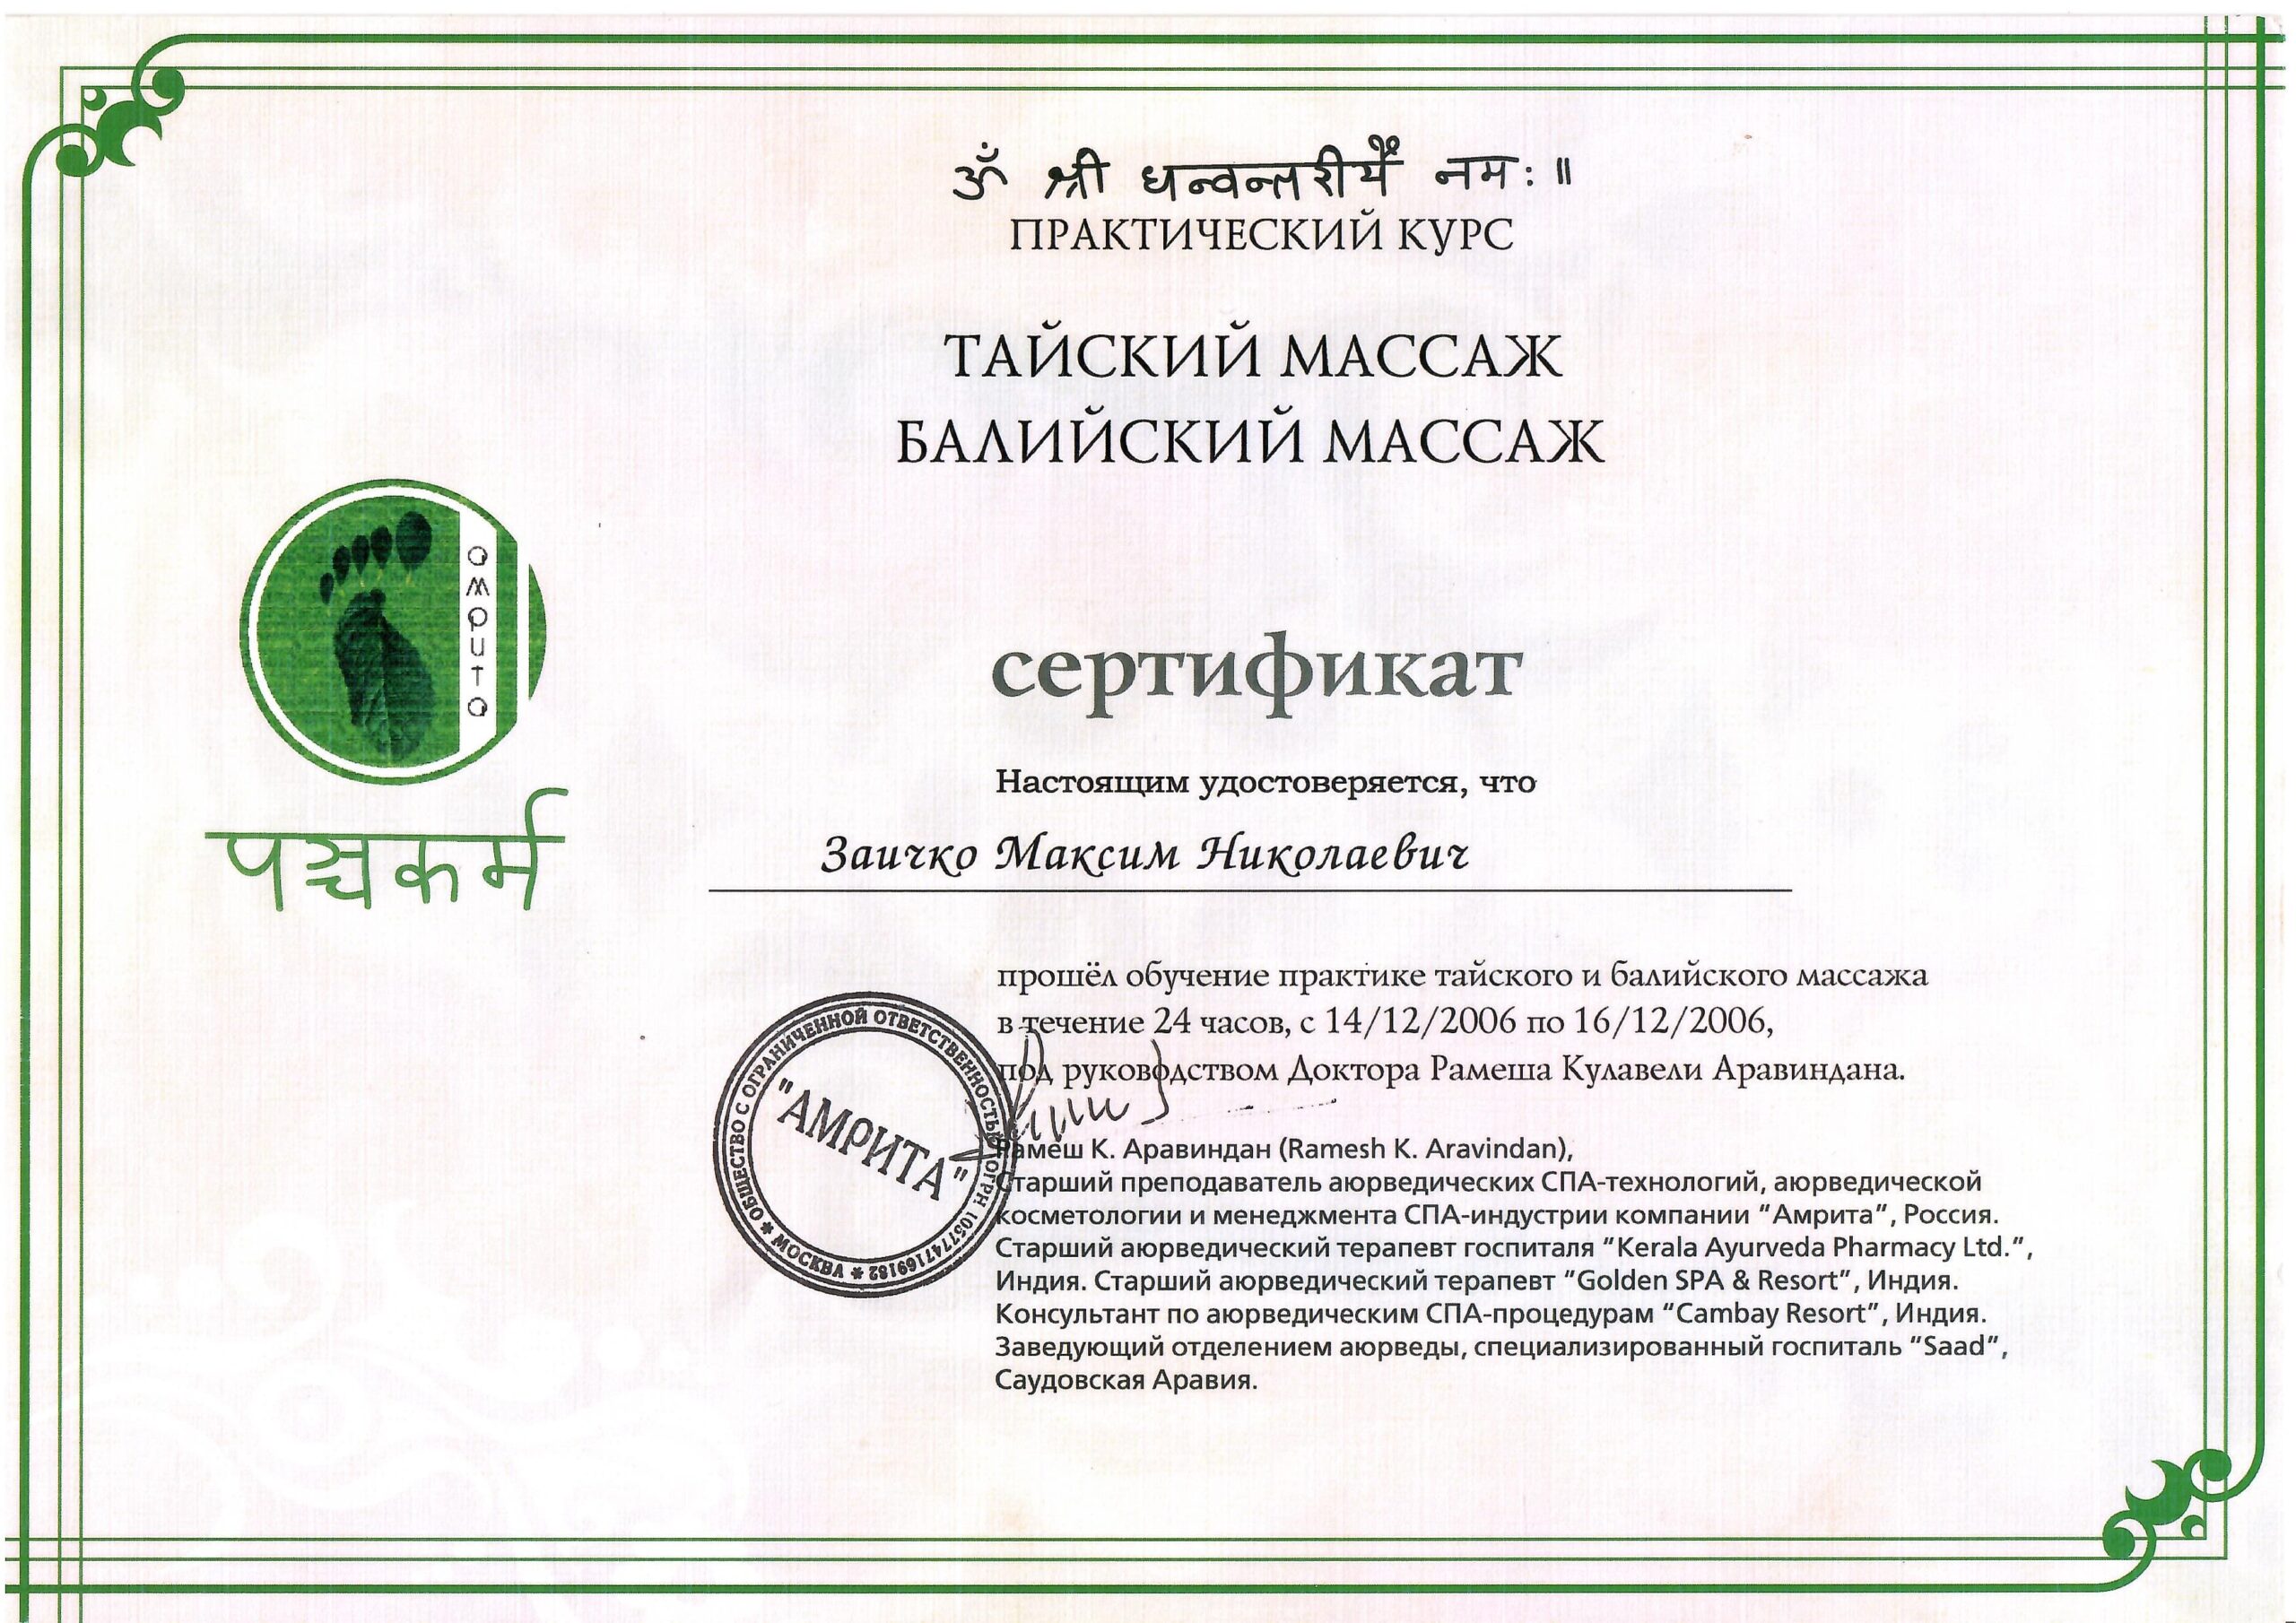 zaichko-maksim-diplomy-i-sertifikaty-12